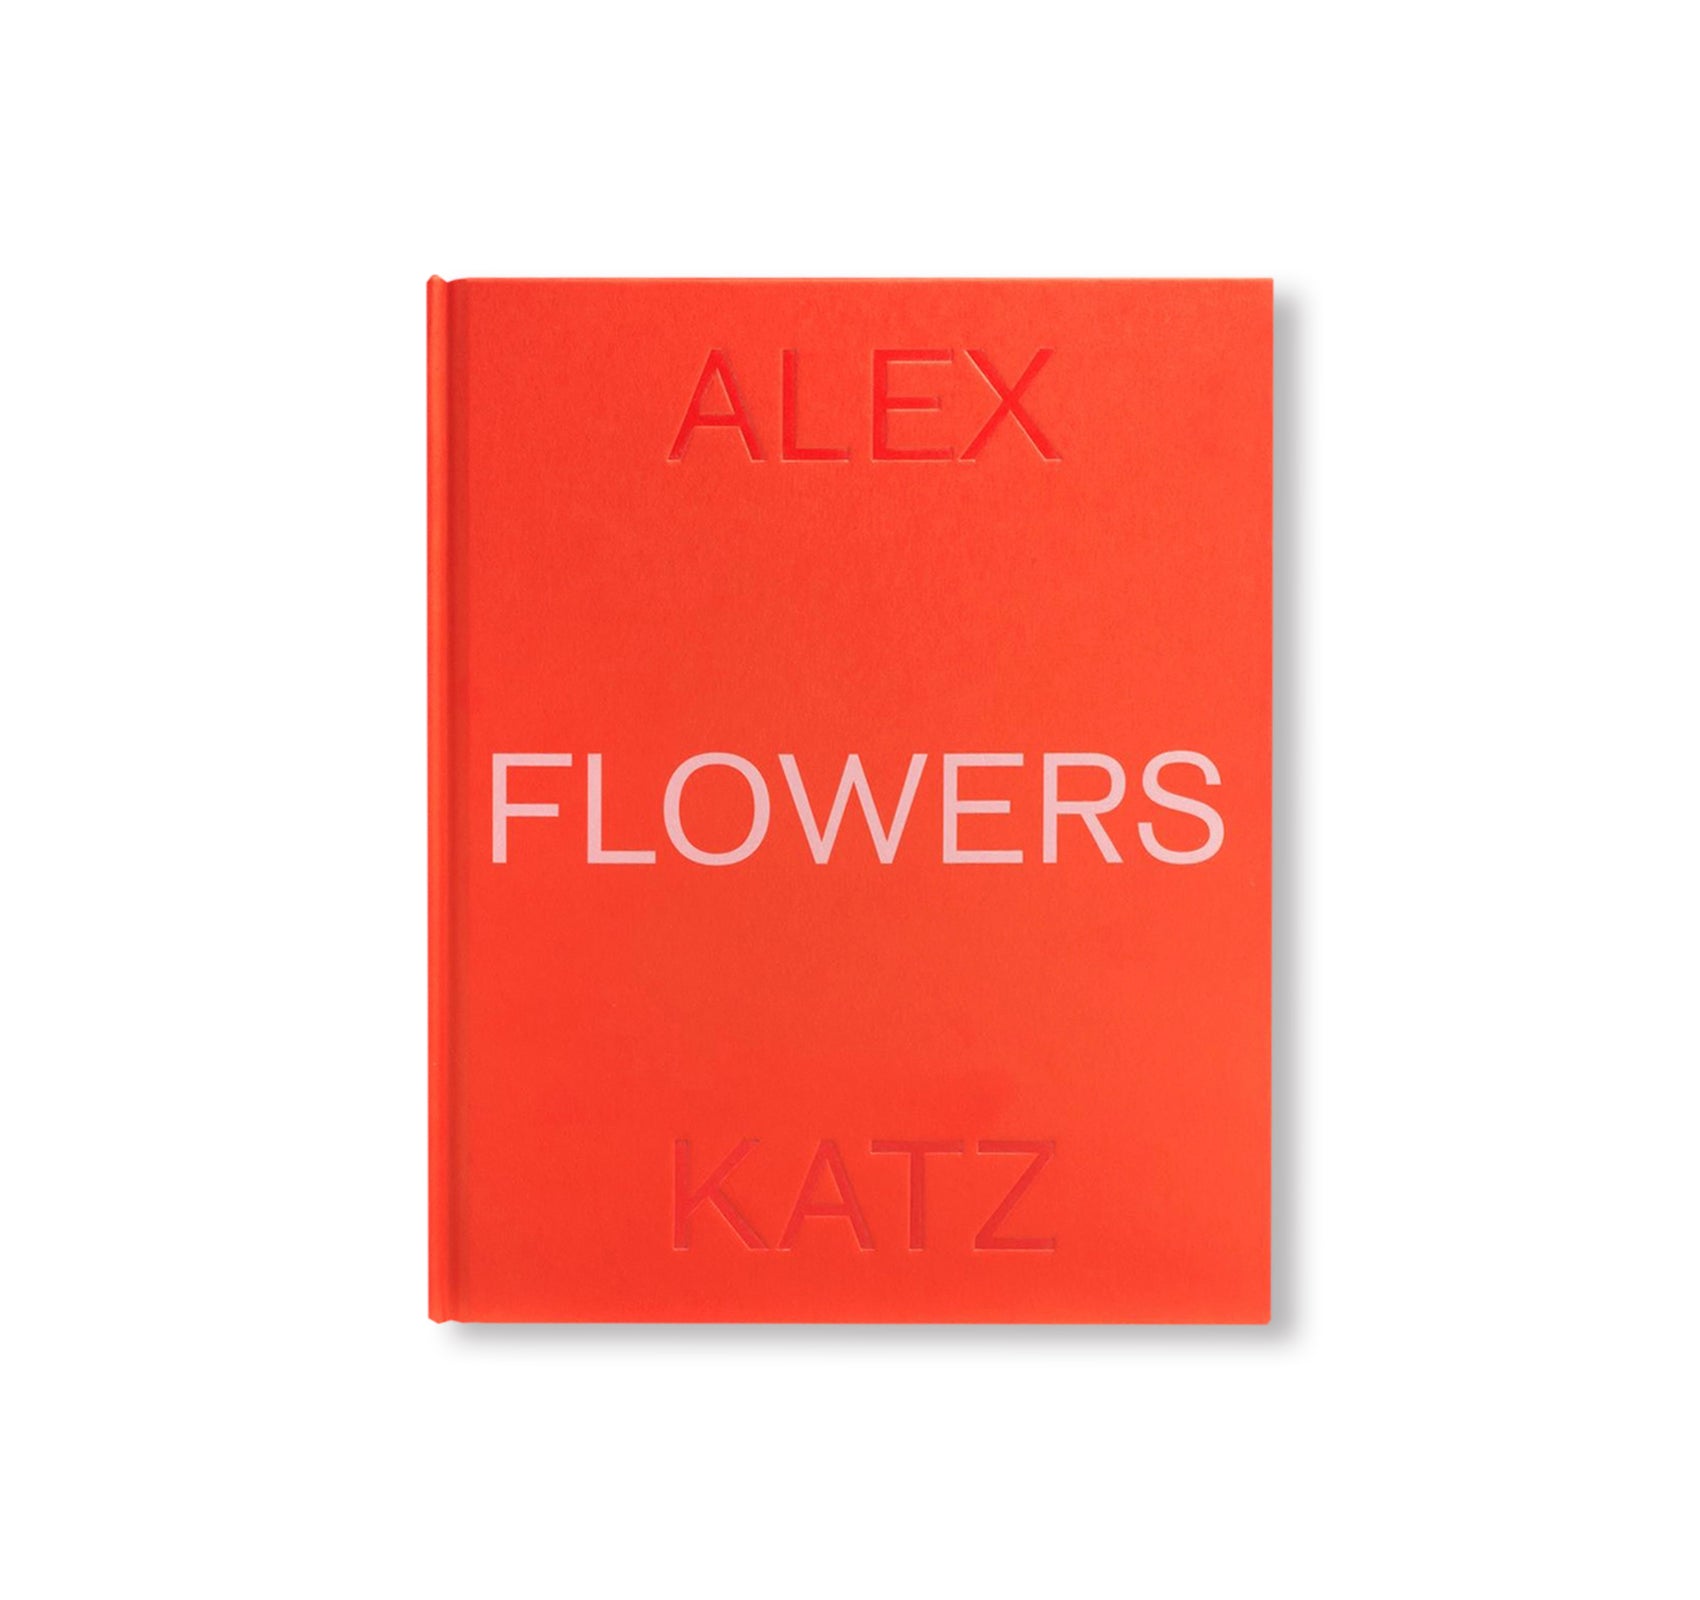 FLOWERS (2019) by Alex Katz